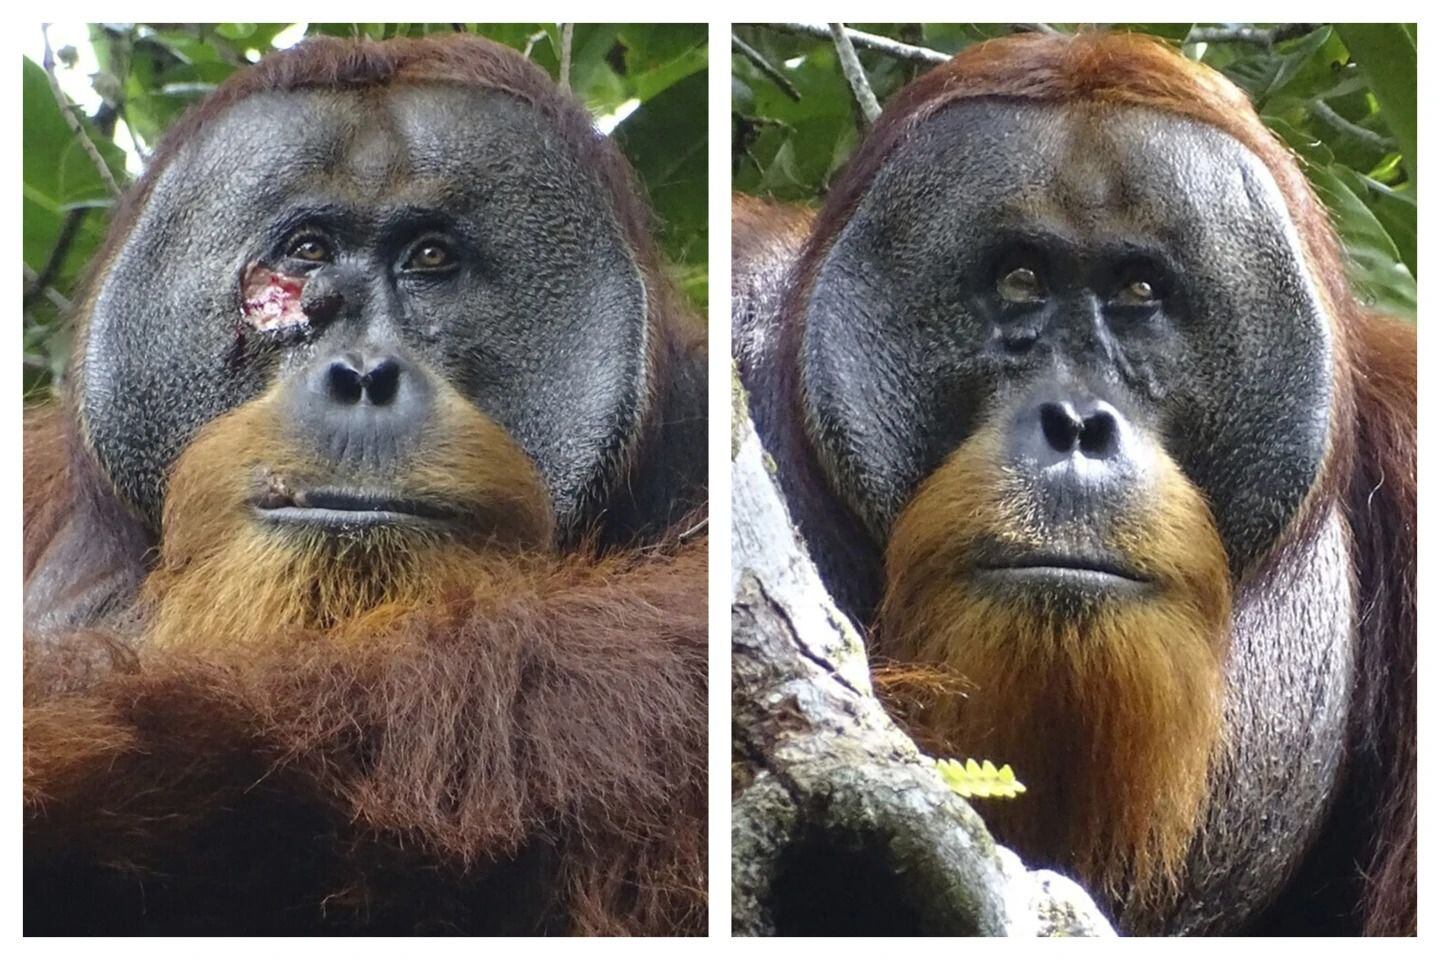 orangután salvaje usa planta medicinal para curarse de una herida: científicos